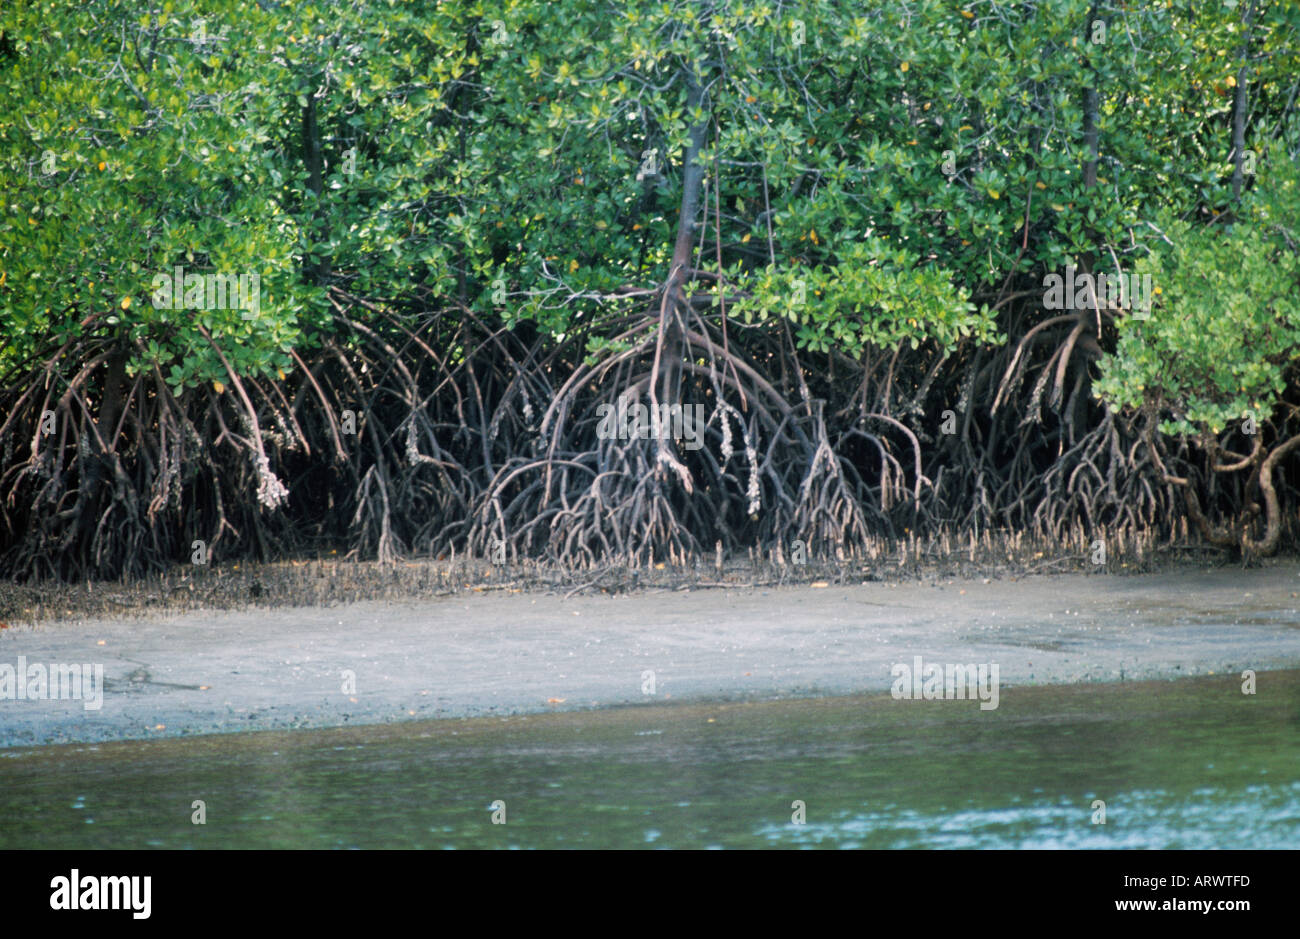 Mangrovenbäume wachsen in tropischen Küsten Sümpfe, ihre schlanke Hartholz-Stämme geerntet für Decken und andere Konstruktion verwendet Stockfoto